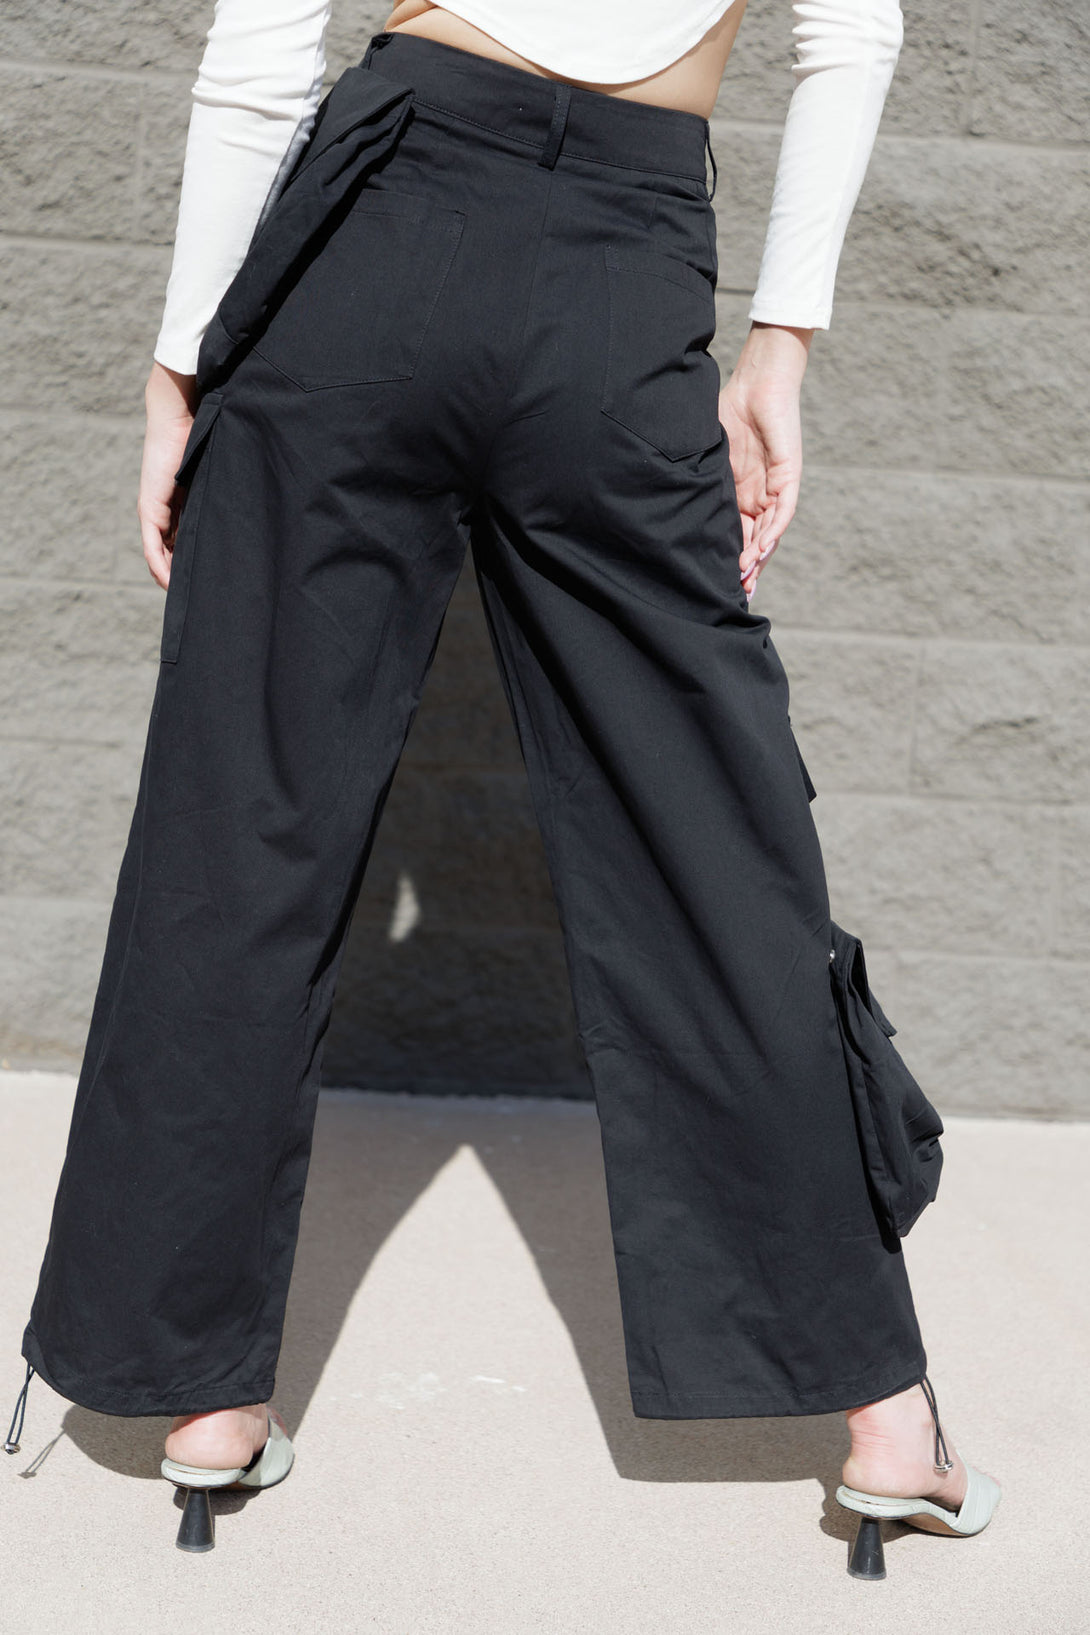 low rise cargo pants, wide leg cargo pants, ladies cargo pants, HT 360 Collective,